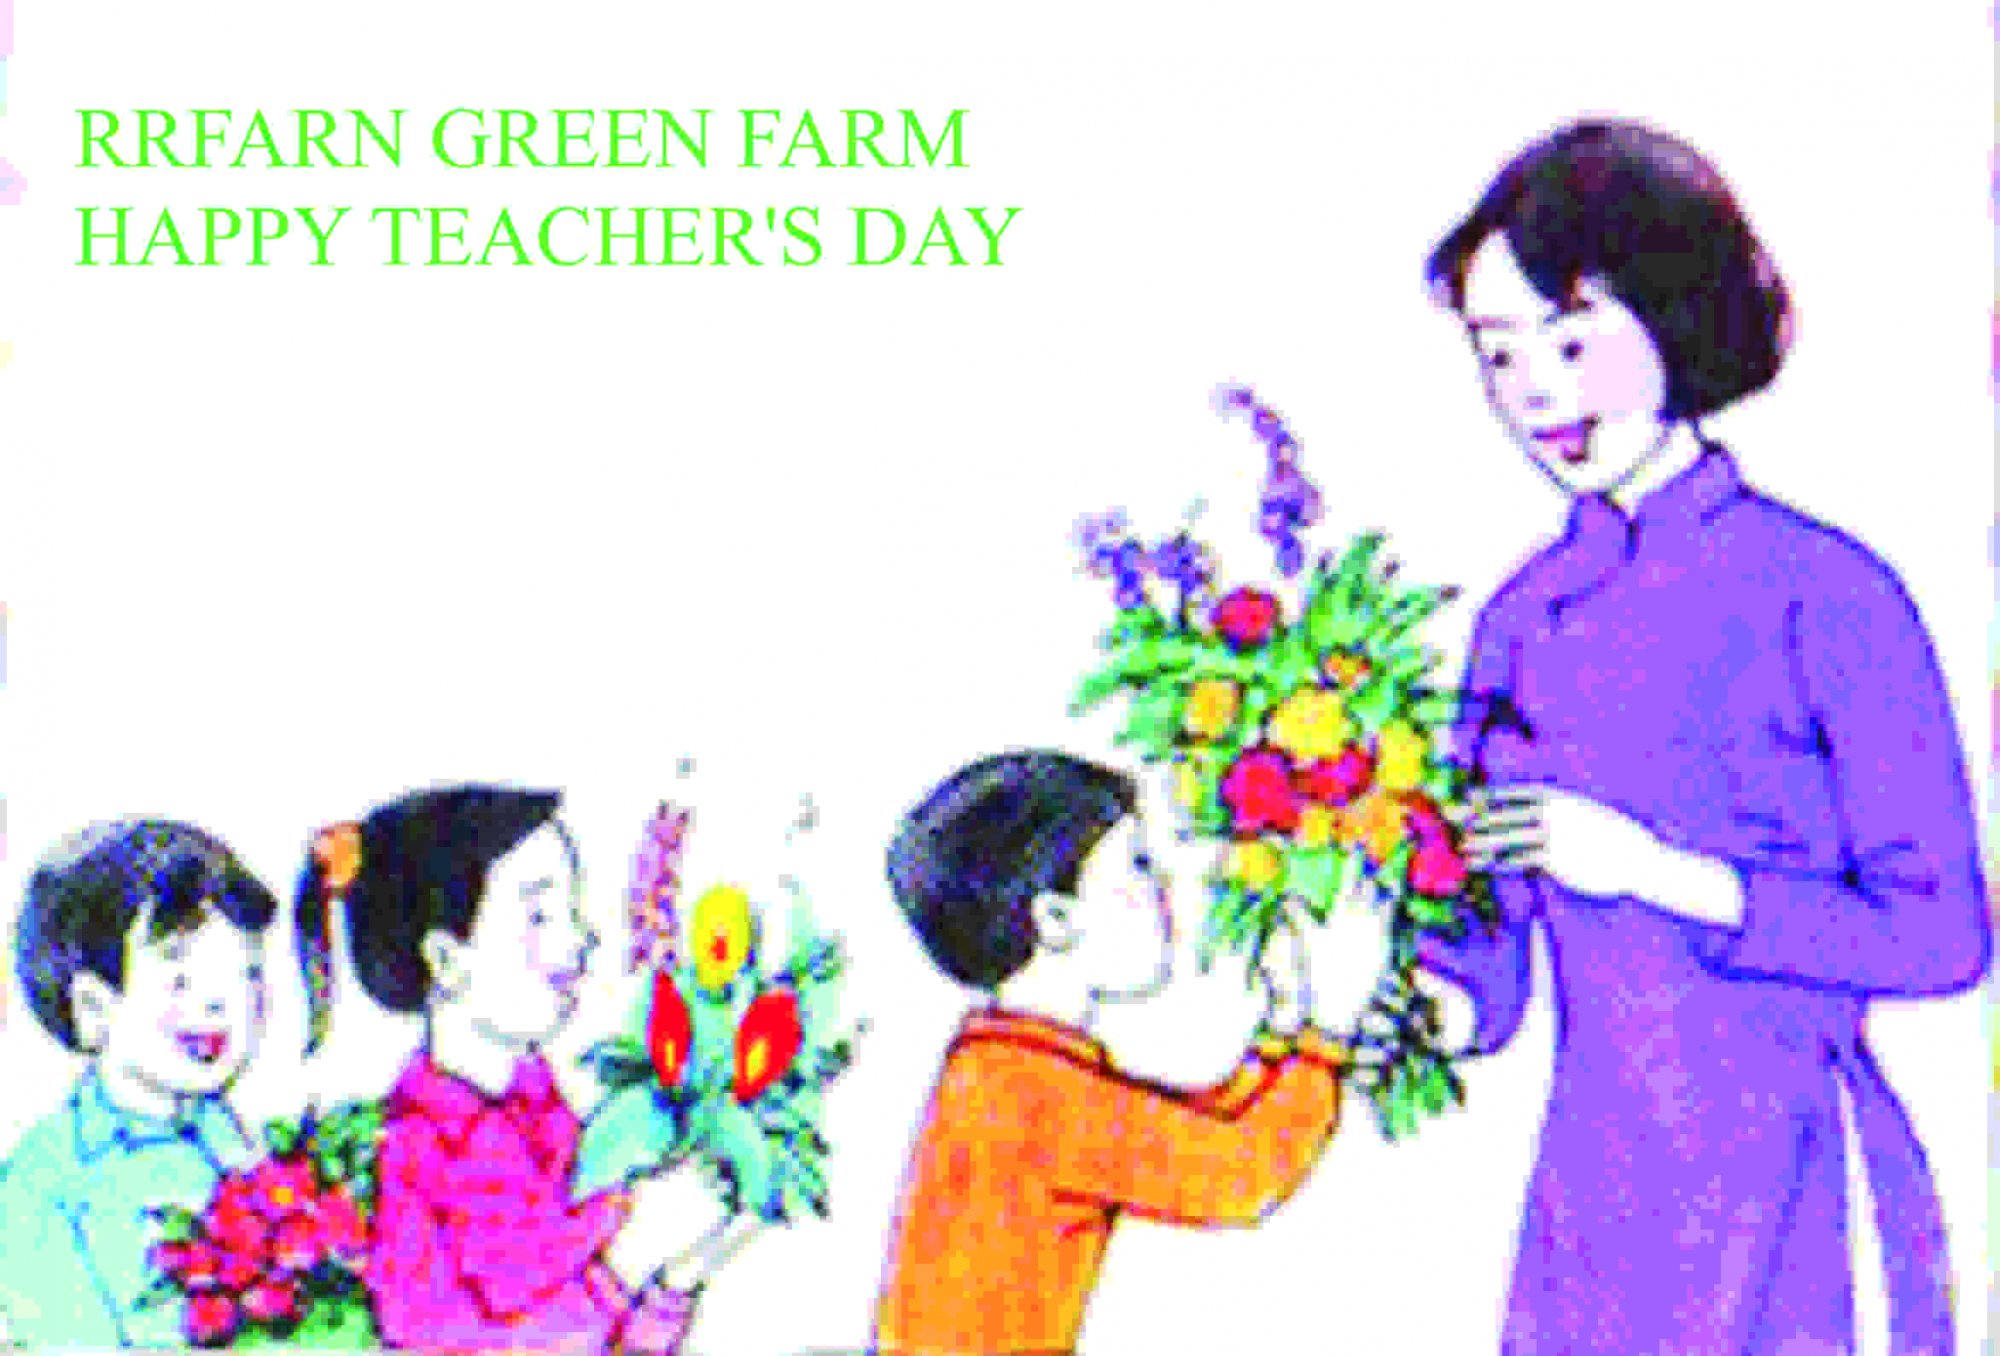 Chúc mừng Ngày nhà giáo Việt Nam! Hãy cùng xem những hình ảnh tuyệt đẹp về các thầy cô giáo yêu quý của chúng ta. Dành những giây phút để ngắm nhìn những khoảnh khắc ý nghĩa và cảm động.